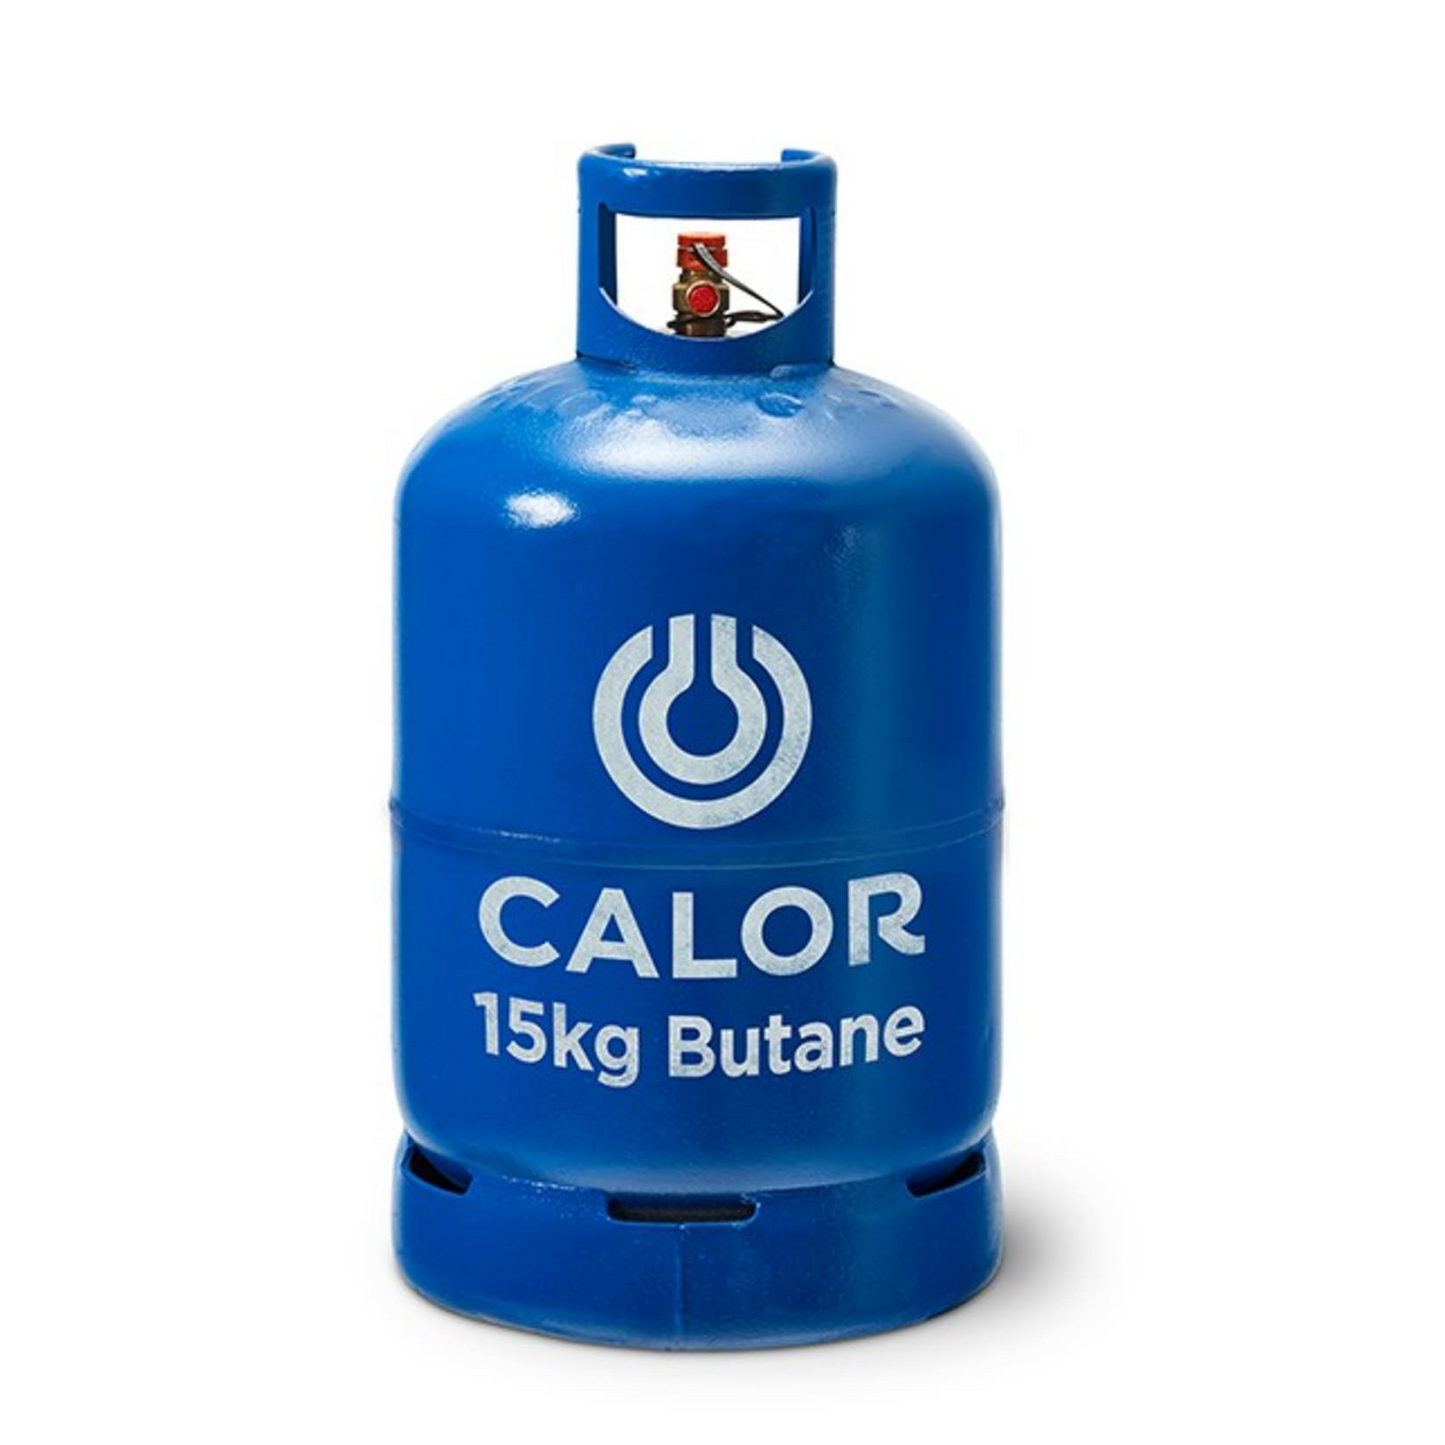 Calor 15kg Butane Gas Bottle